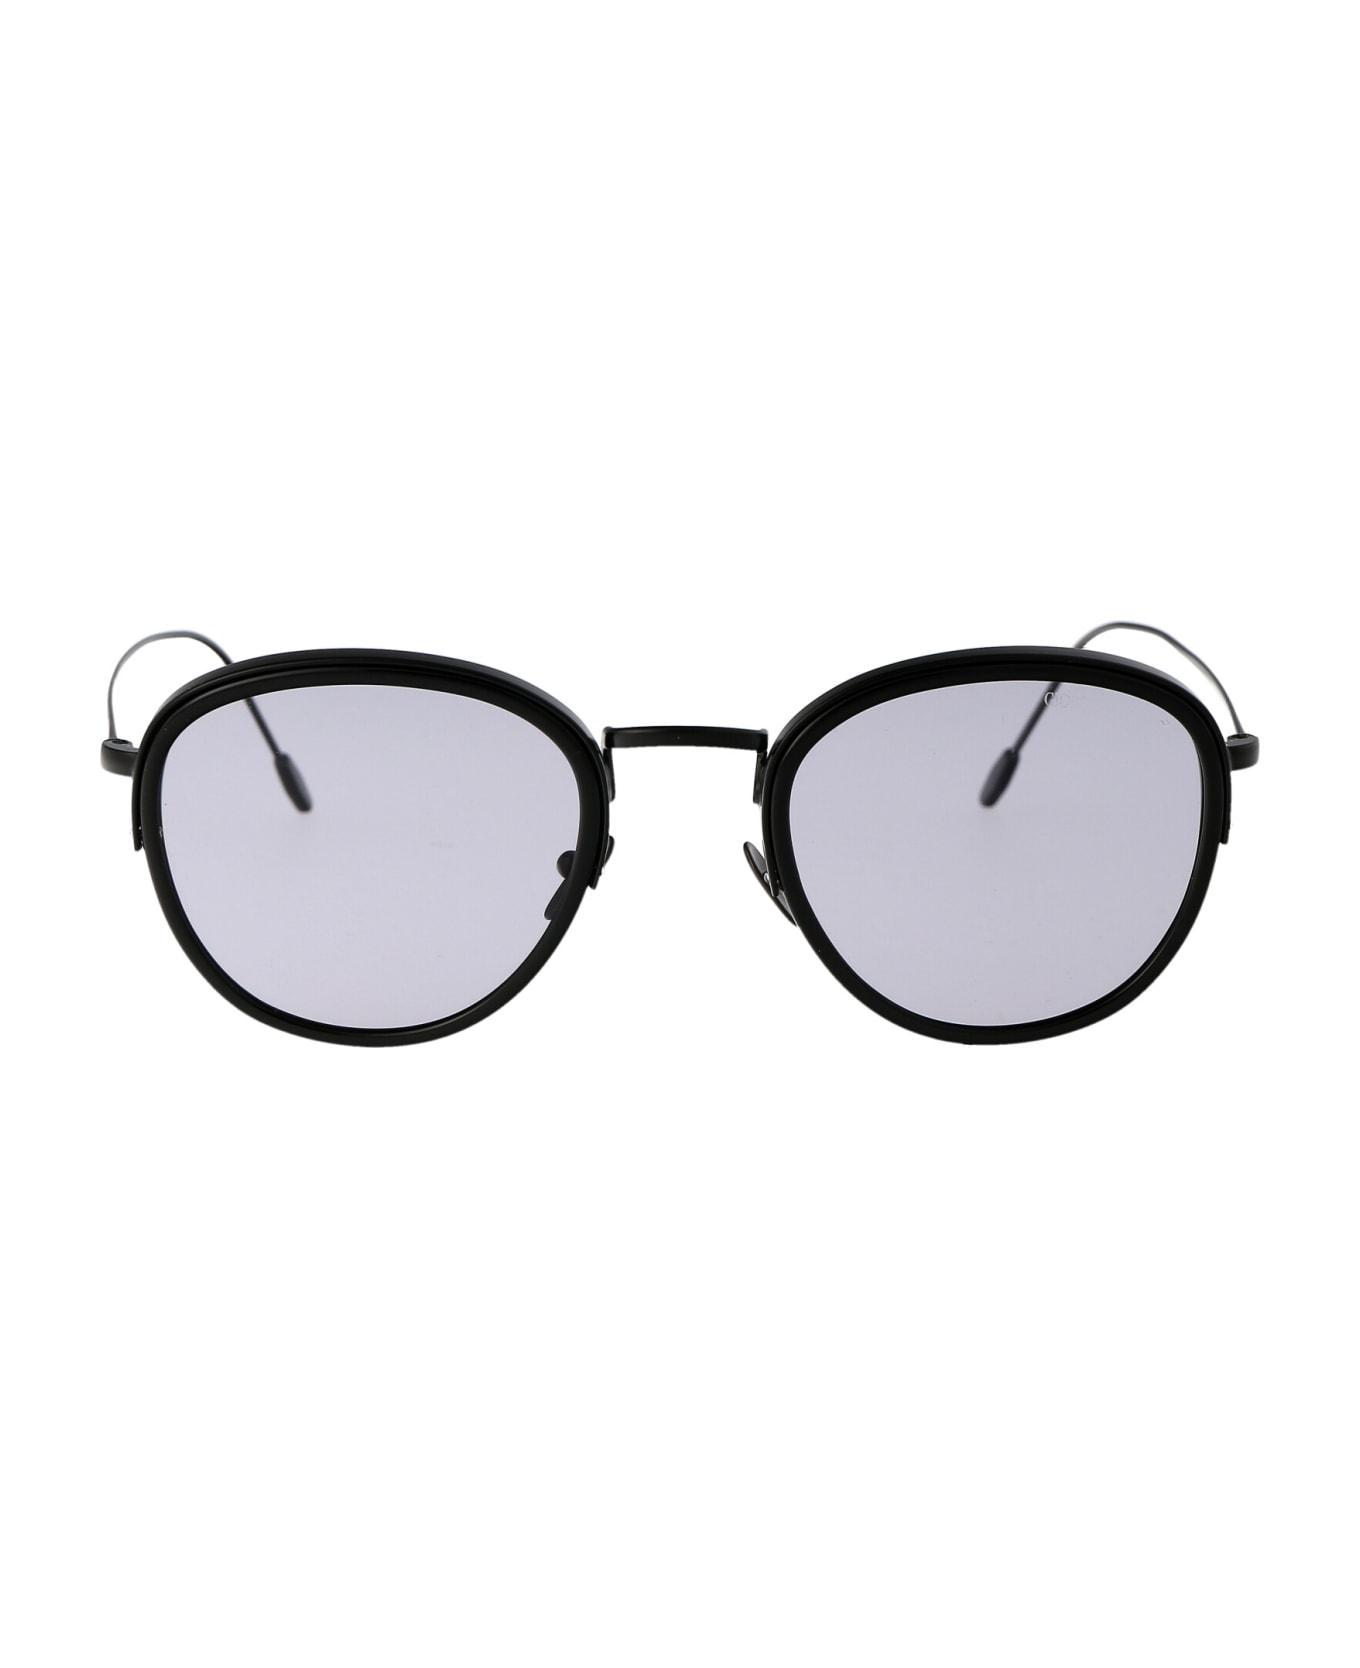 Giorgio Armani 0ar6068 Sunglasses - 3001M3 Matte Black